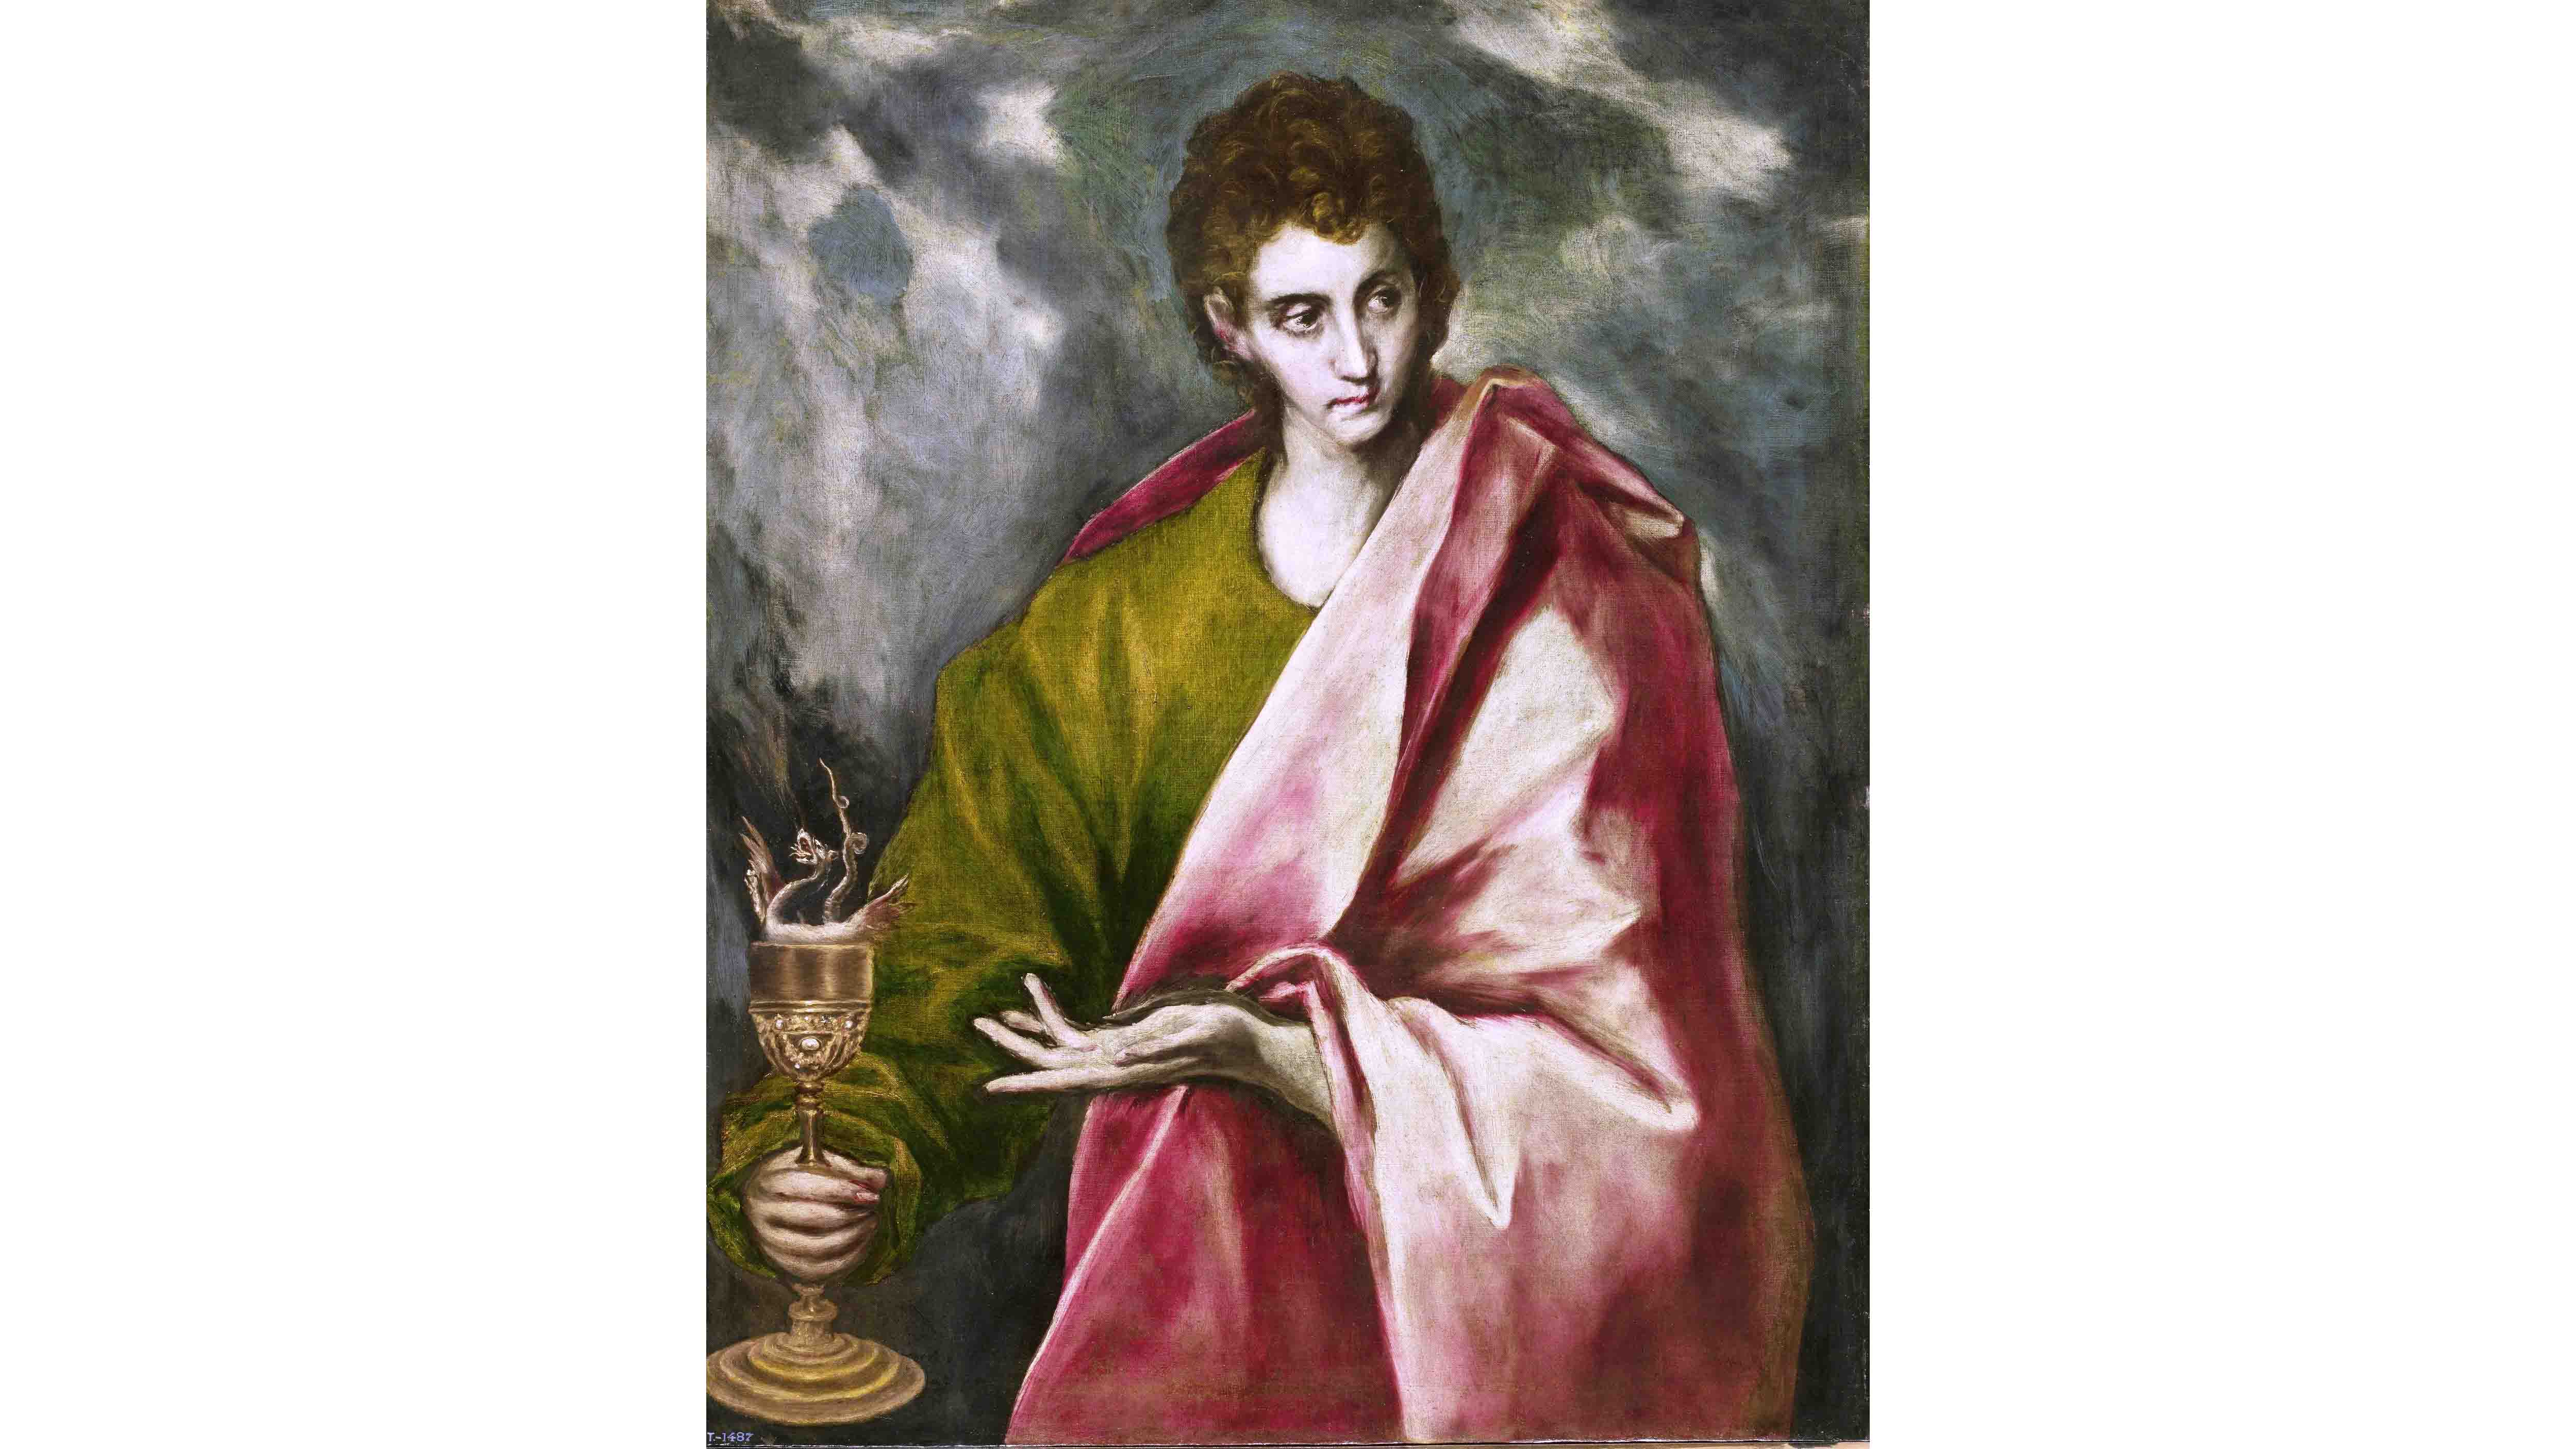 Der hl. Johannes und der Kelch, Gemälde von El Greco um 1650. (Foto: public domain)